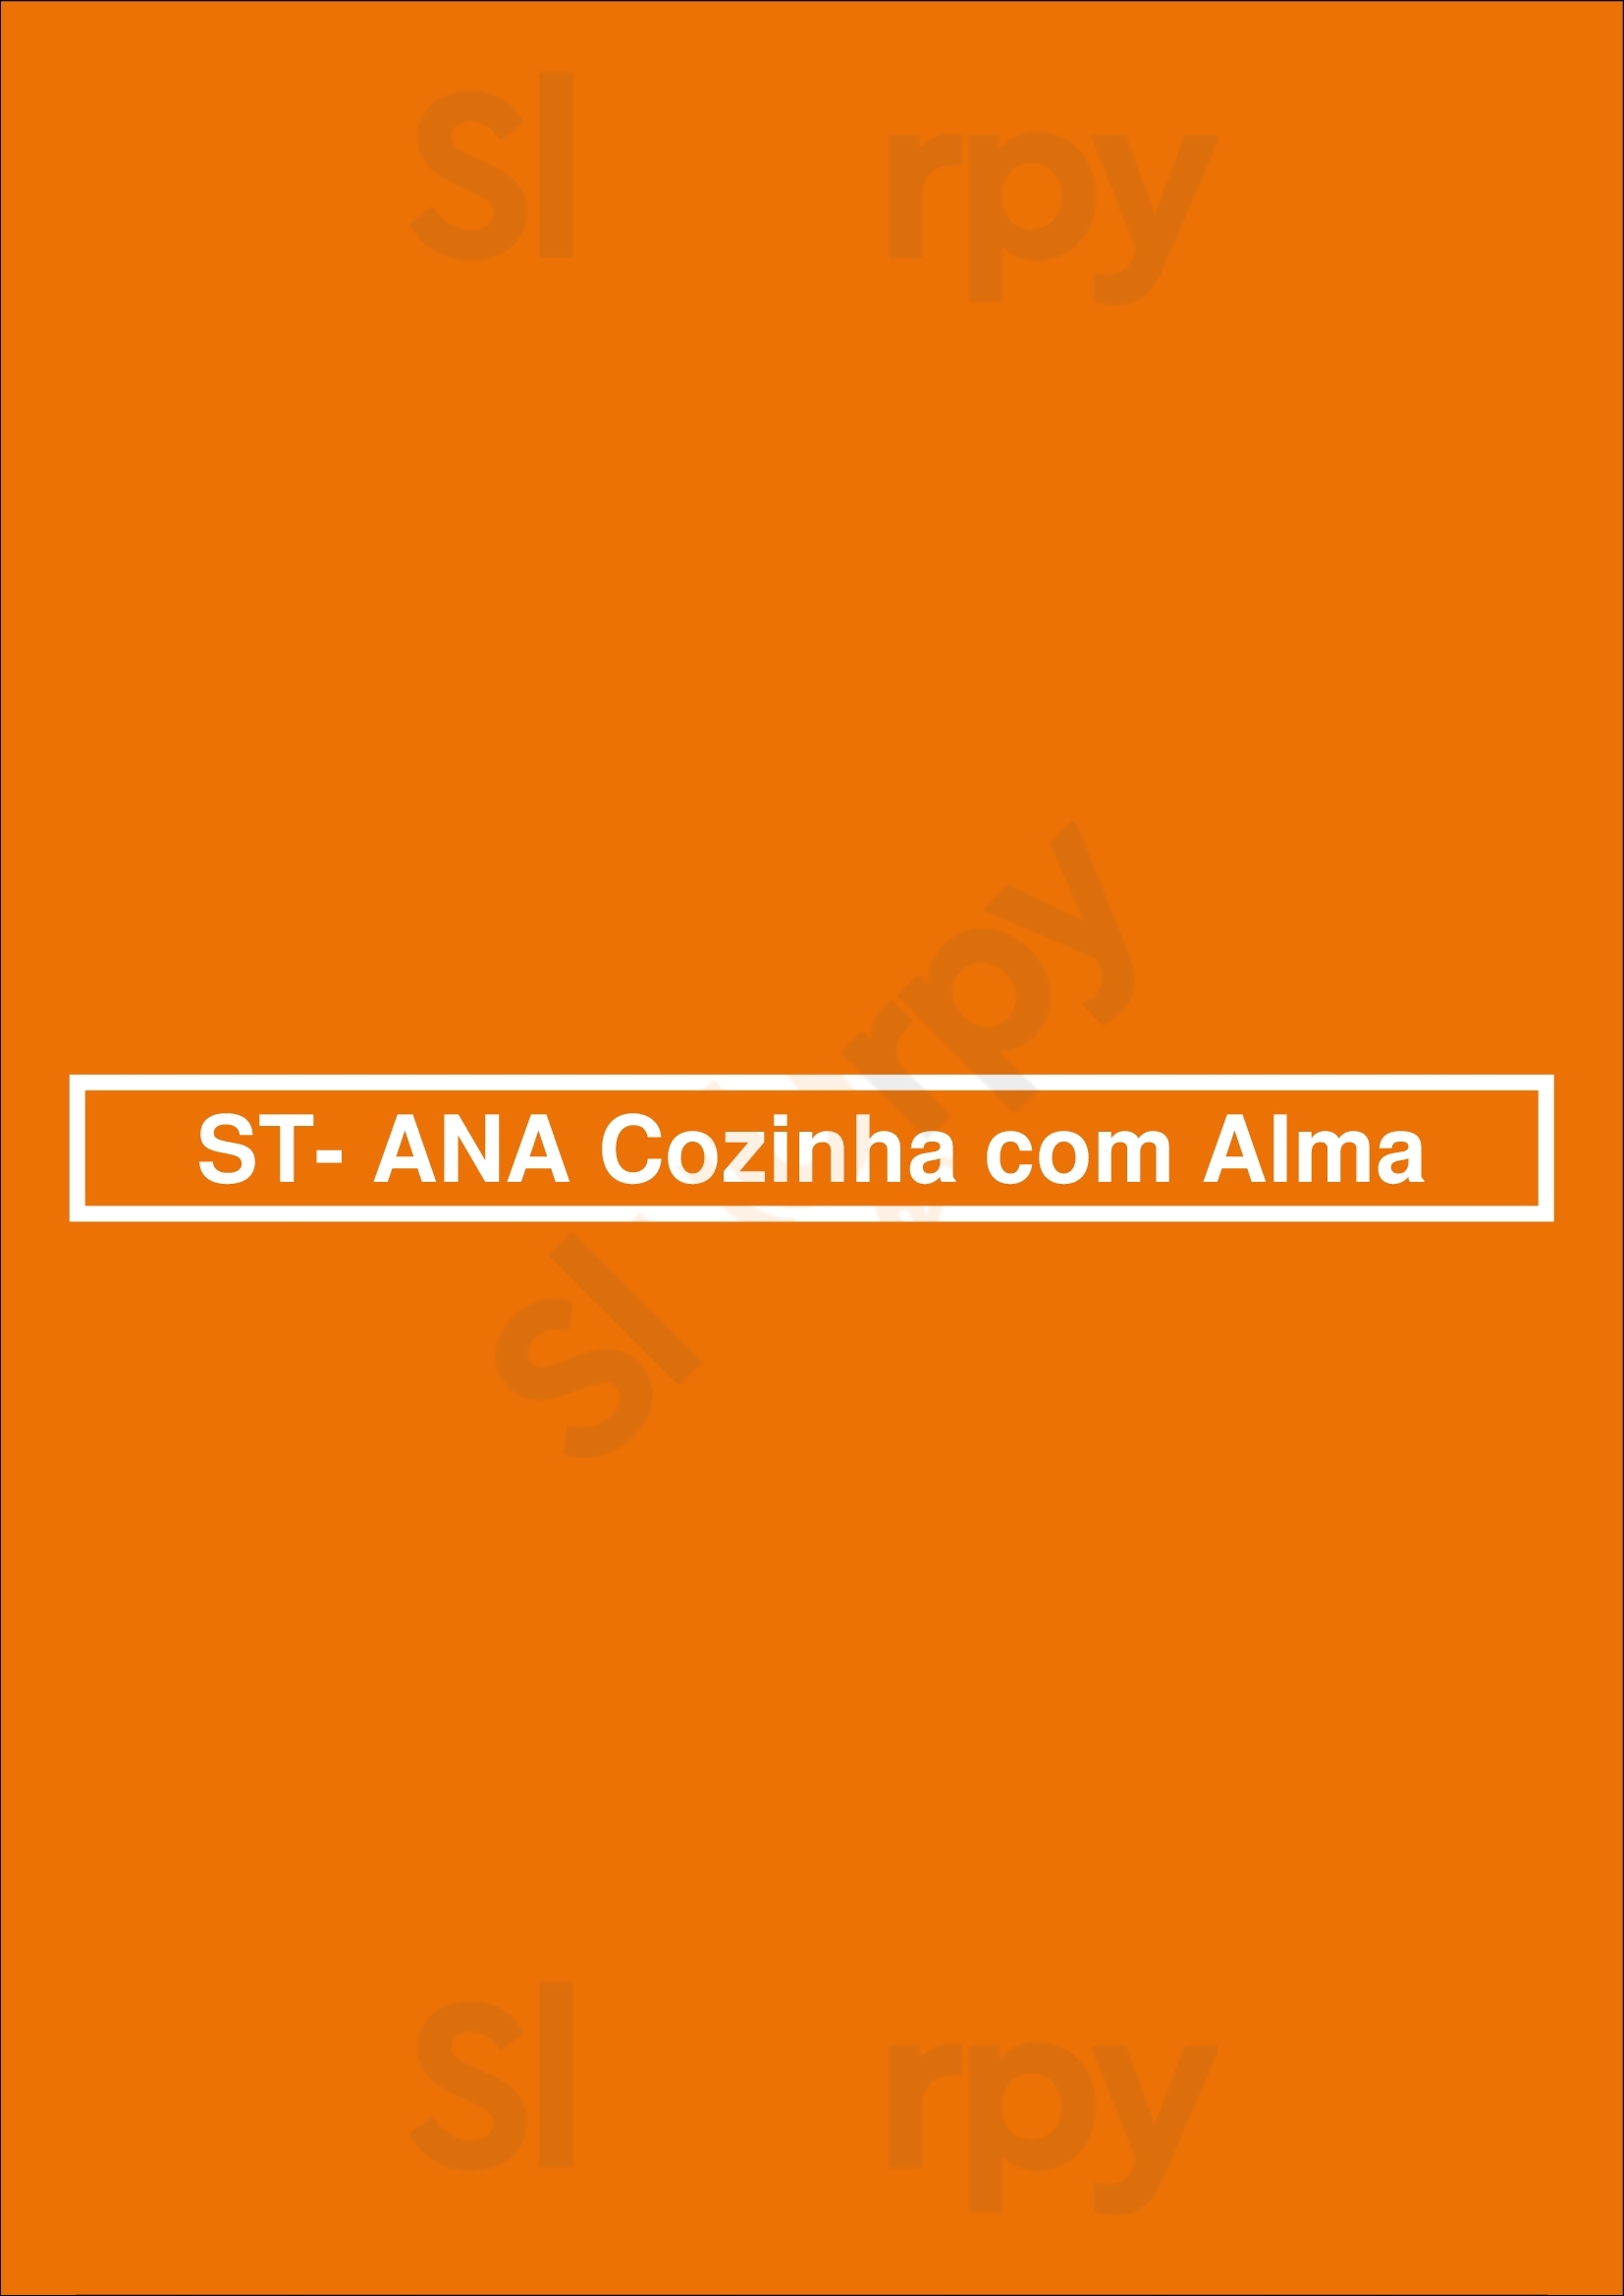 St- Ana Cozinha Com Alma Vila Nova de Famalicão Menu - 1